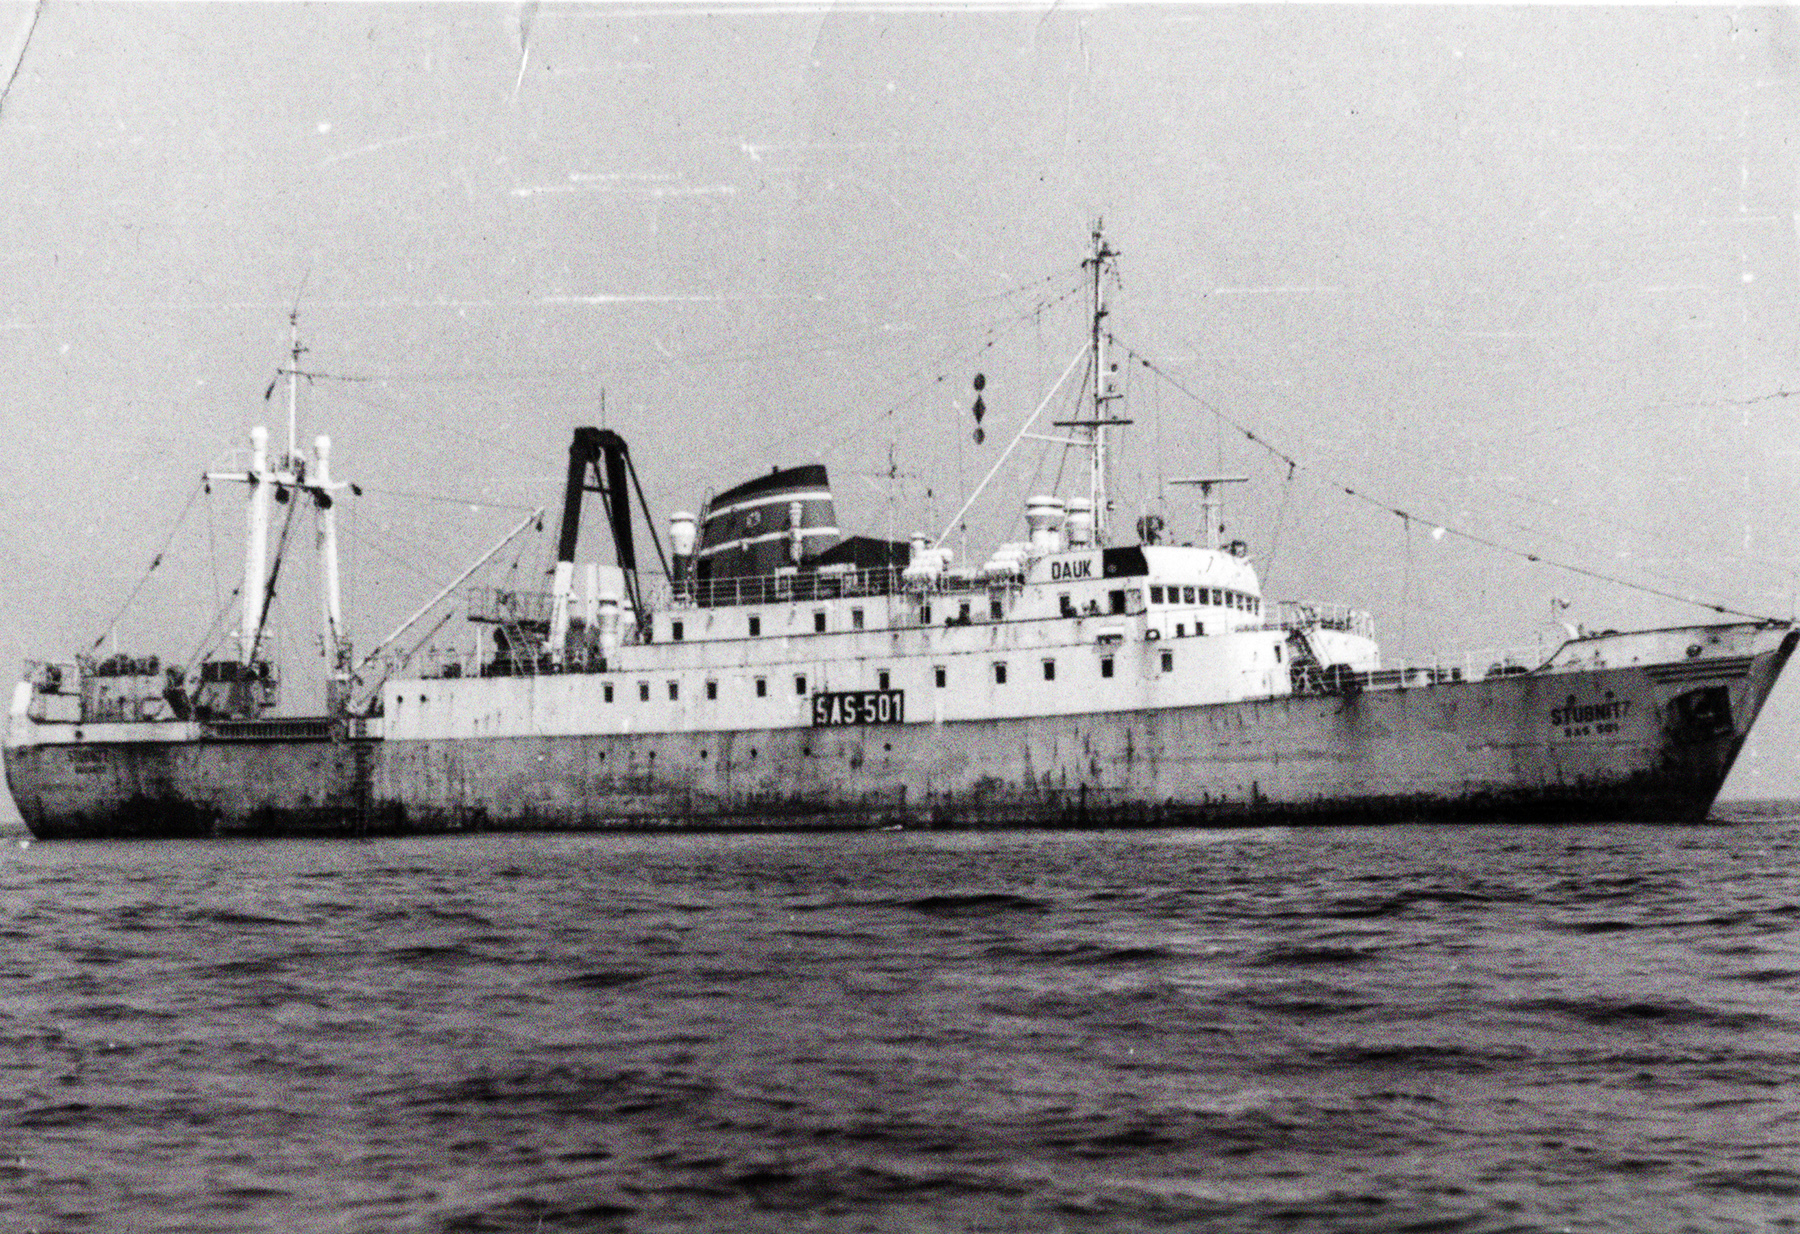 Die Stubnitz auf See von der Seite fotografiert. Die Schiffskennung "SAS 501" ist gut zu erkennen.